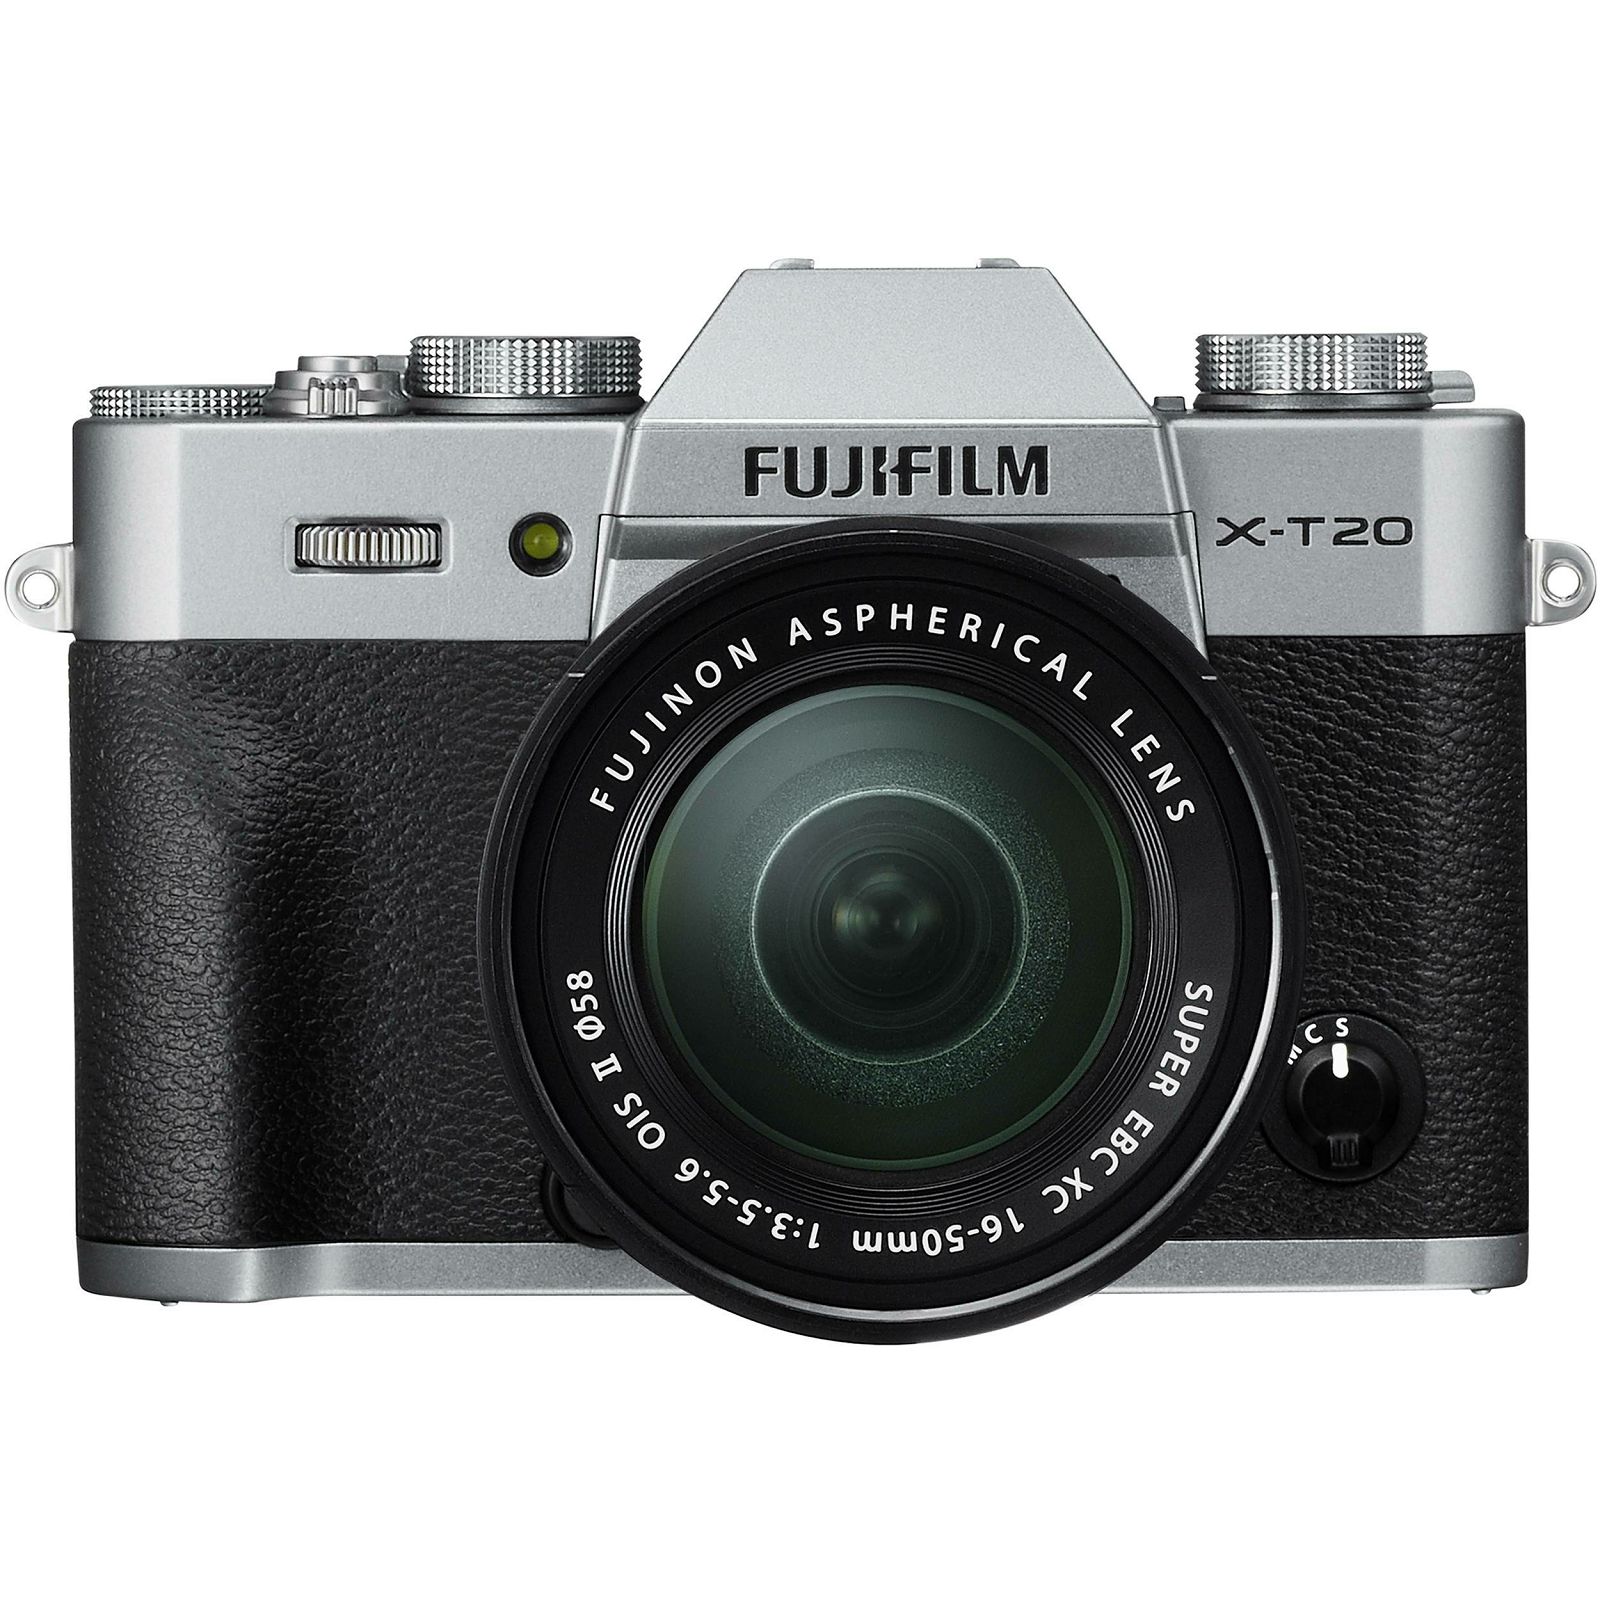 Fujifilm X-T20 + XC 16-50 f3.5-5.6 OIS II Silver srebreni digitalni mirrorless fotoaparat s objektivom 16-50mm Fuji